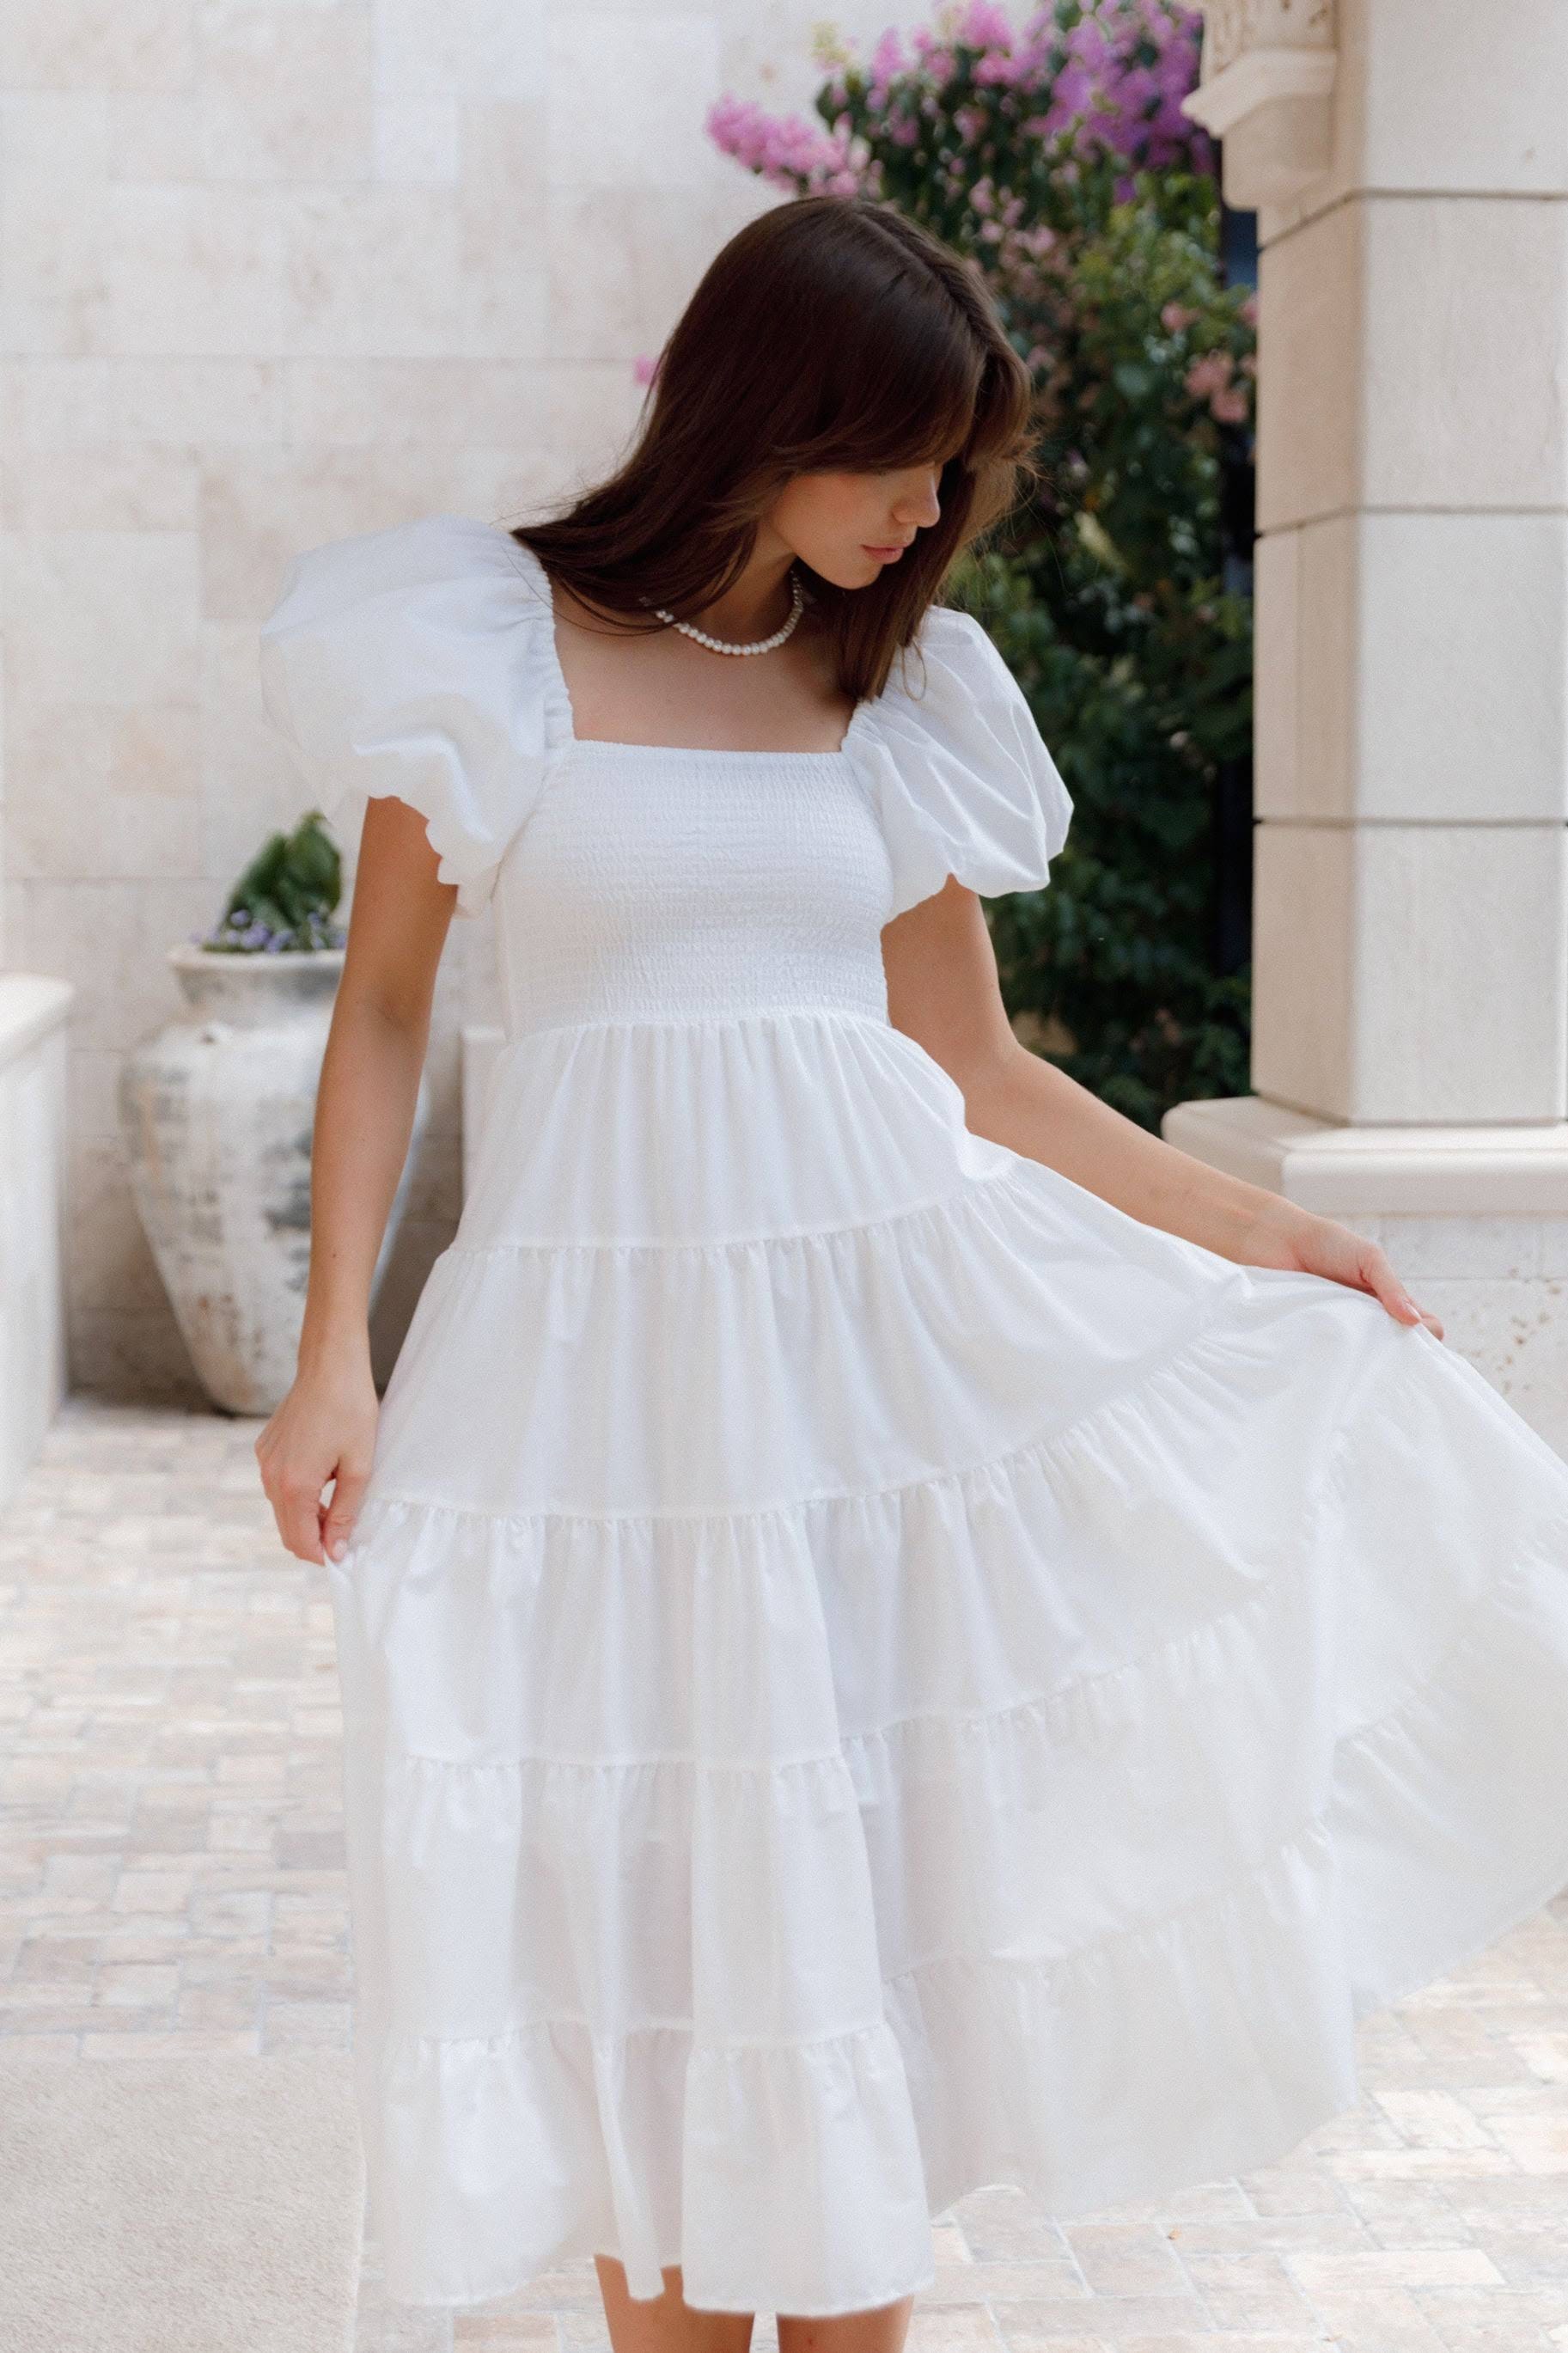 Stylish White Flowy Dress with Shirred Midi Design | Image